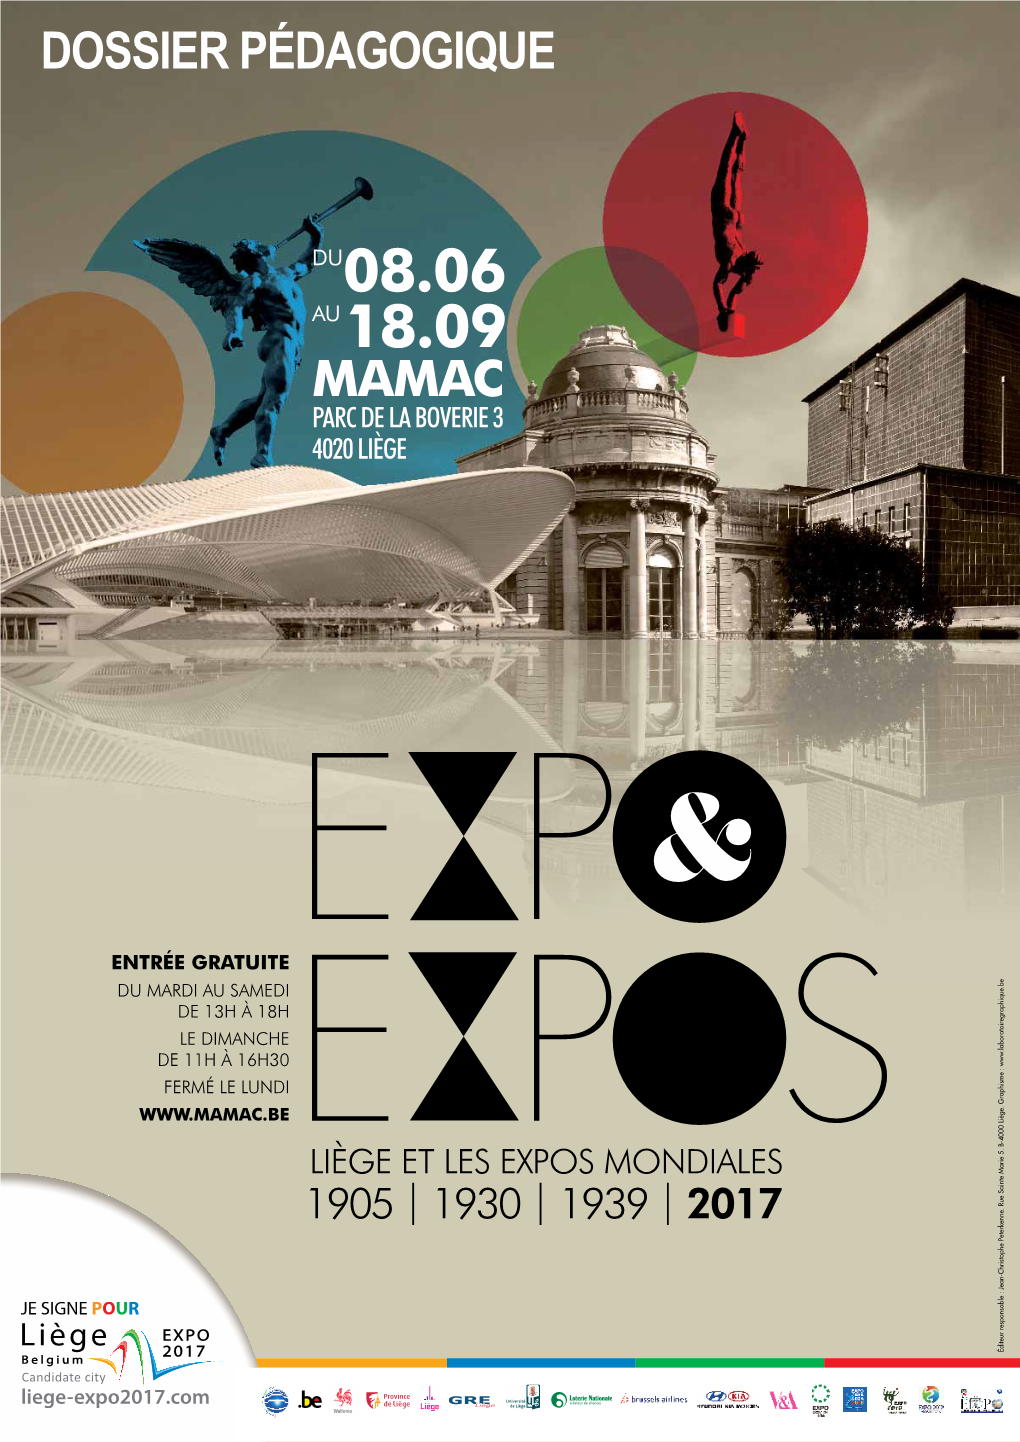 Liège Et Les Expositions Universelles